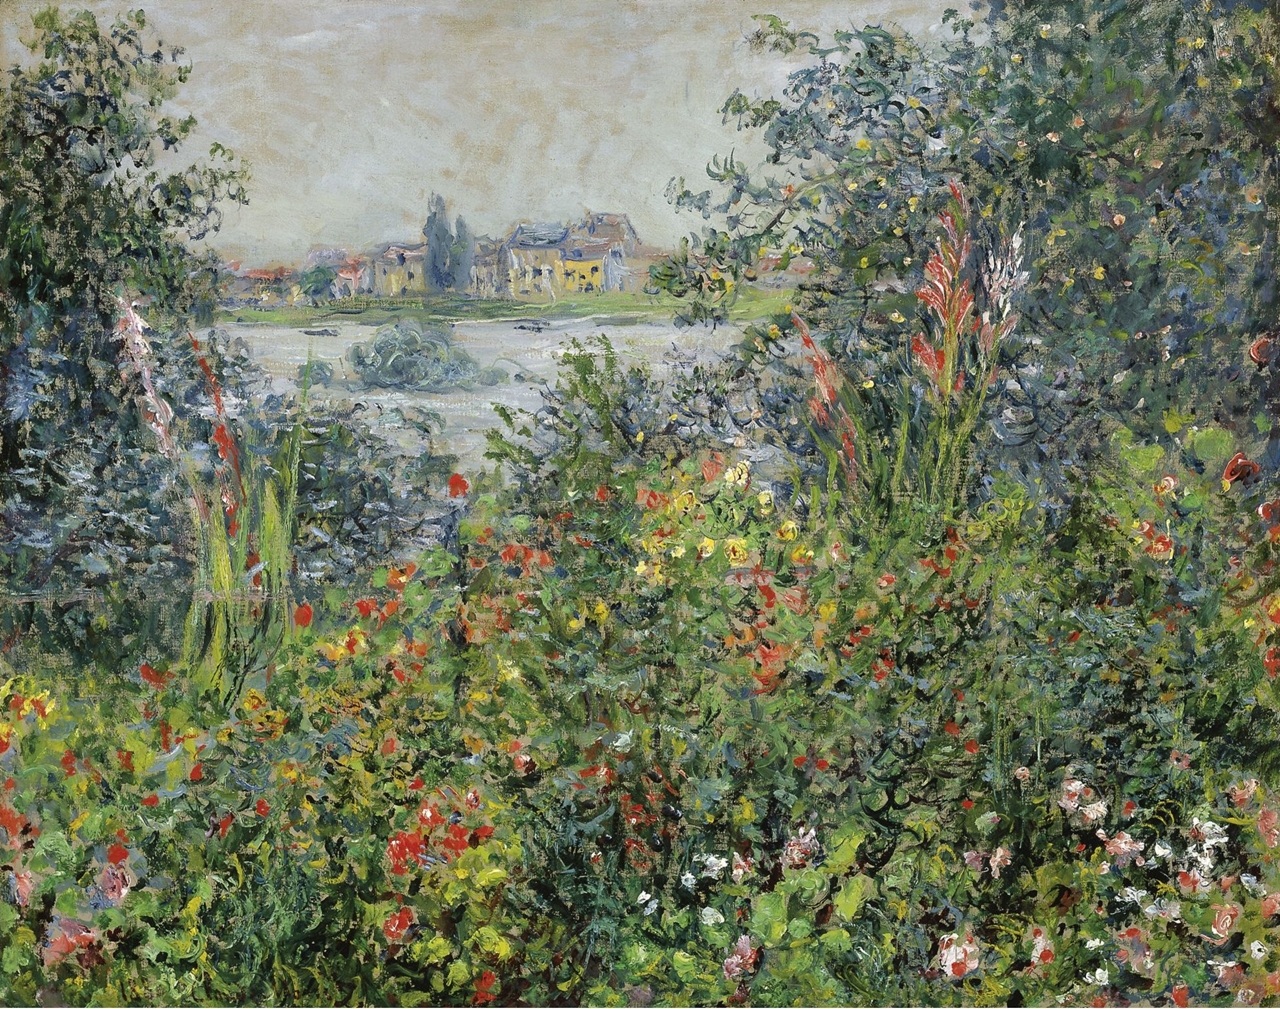 Claude+Monet-1840-1926 (207).jpeg